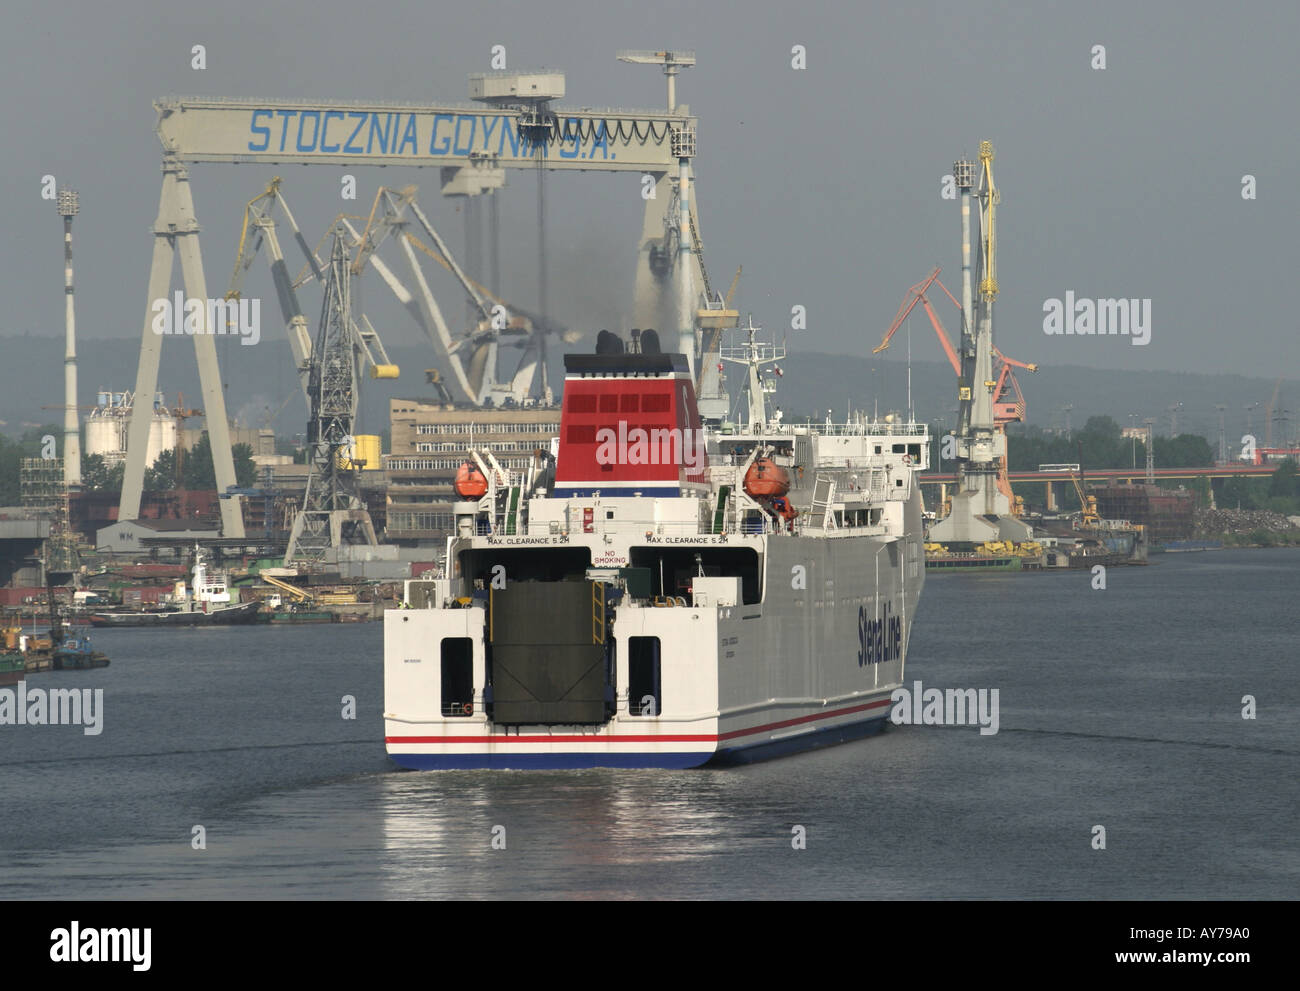 Poland Gdynia Docks Stock Photo